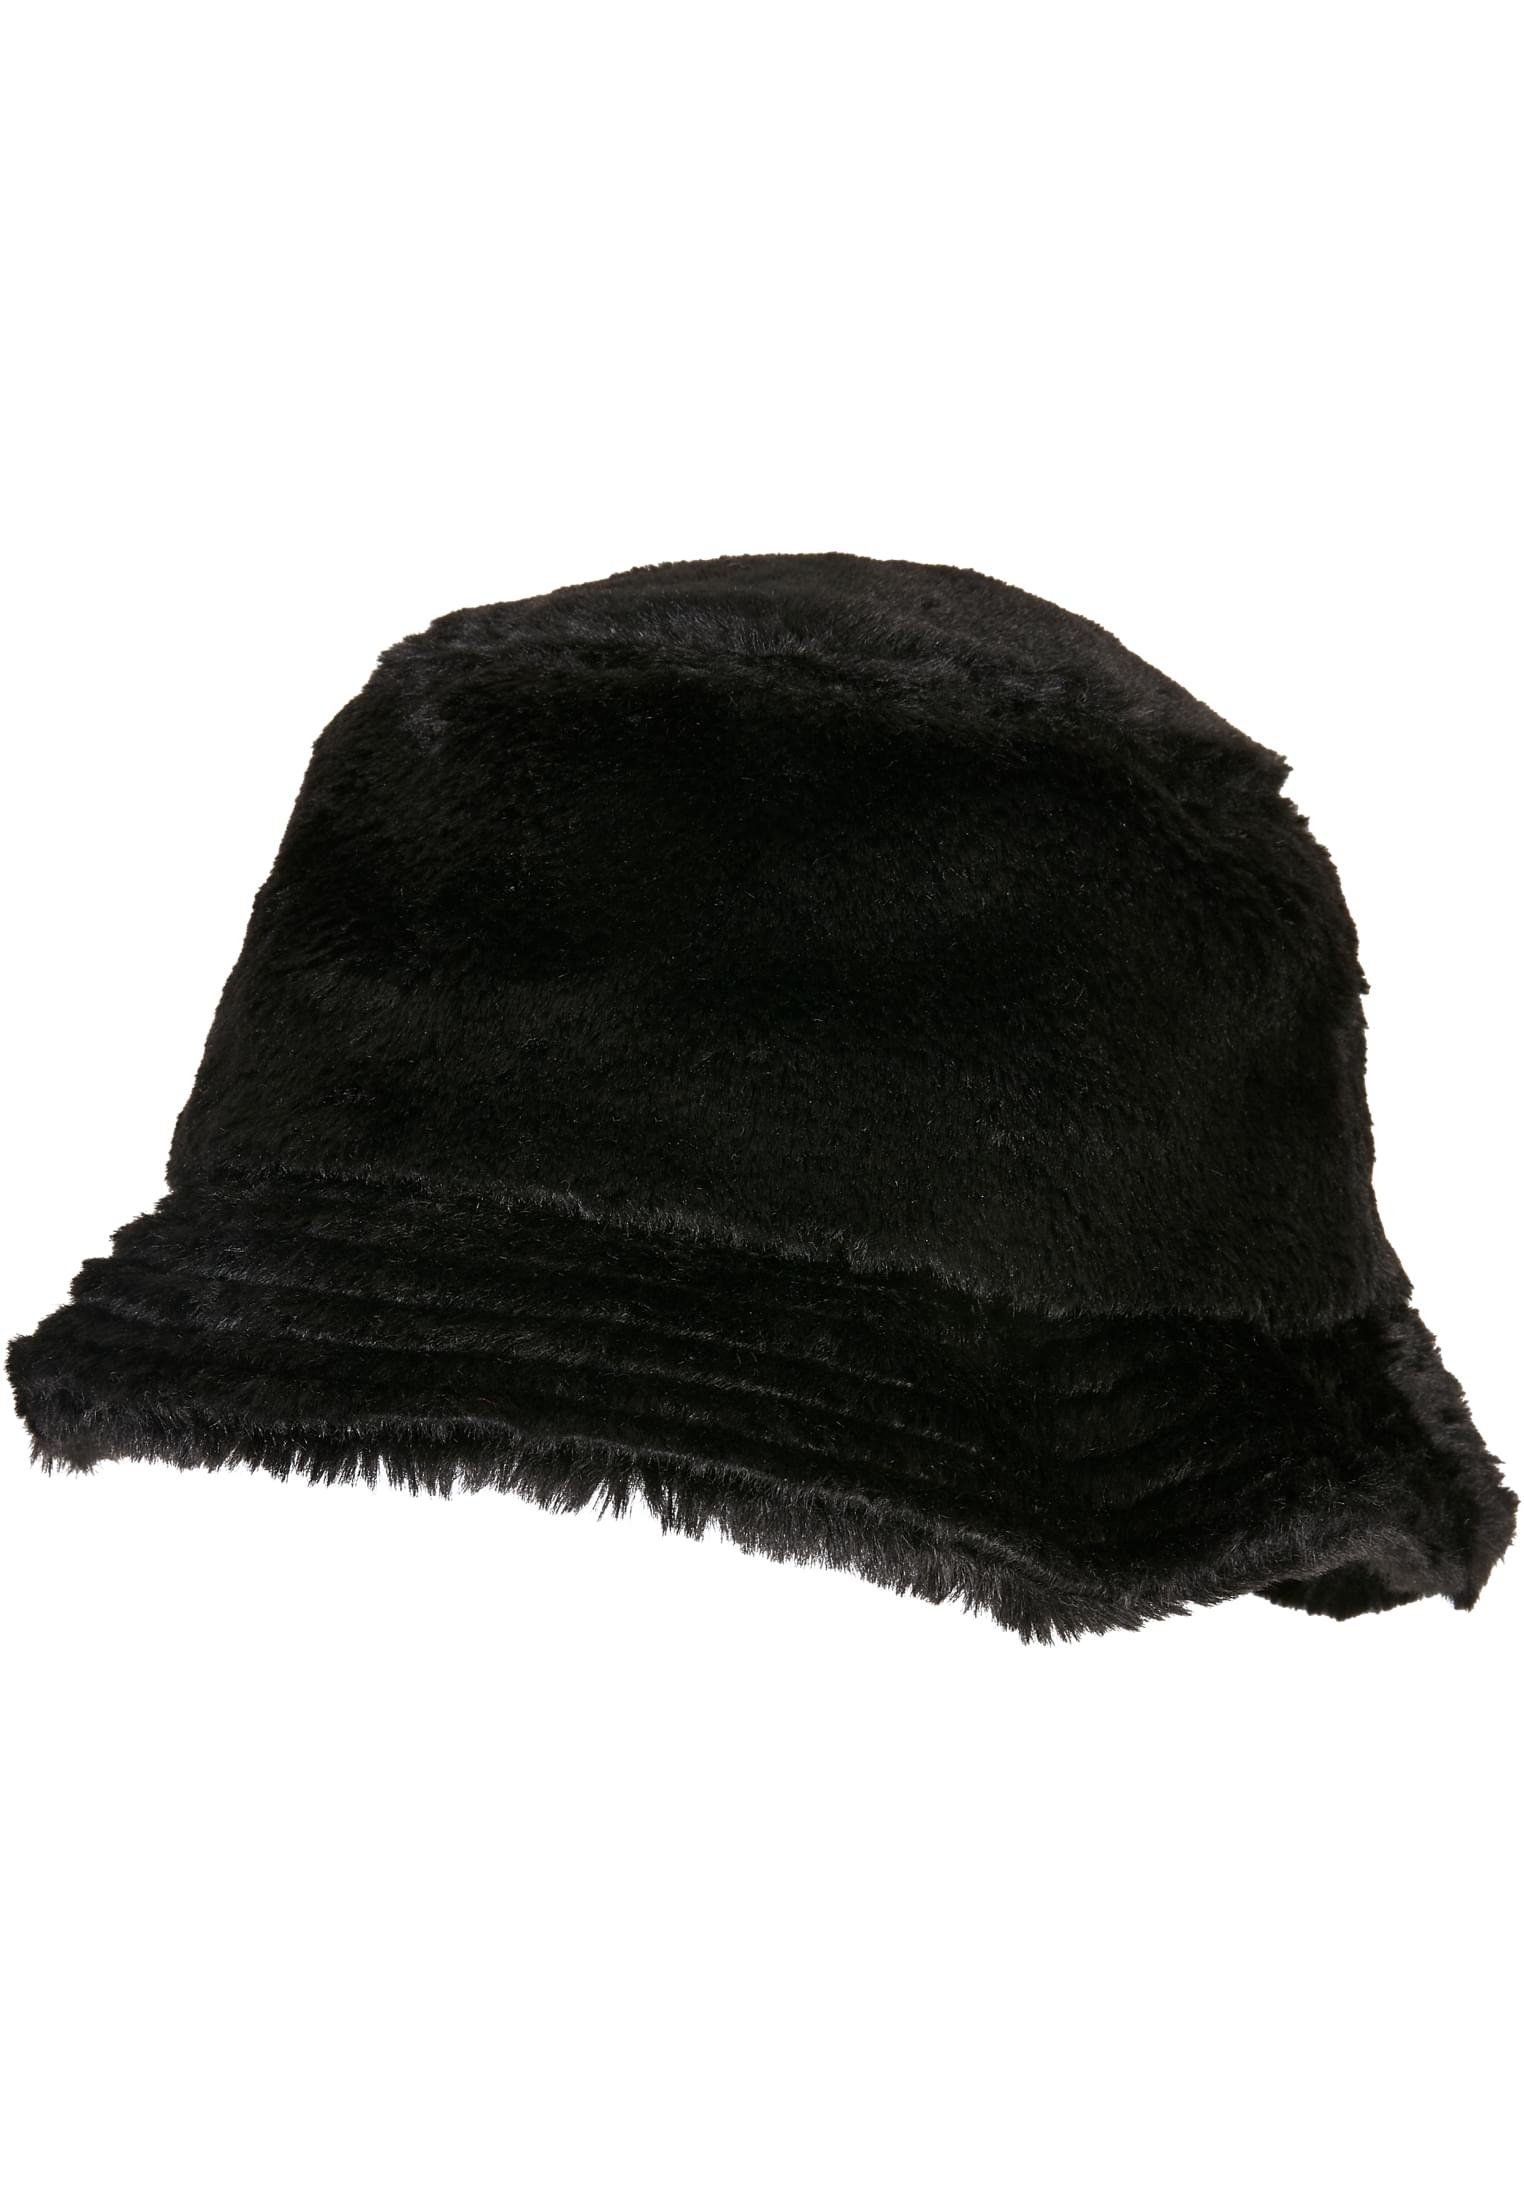 Cap Accessoires Bucket Hat Flex Flexfit Fur Fake